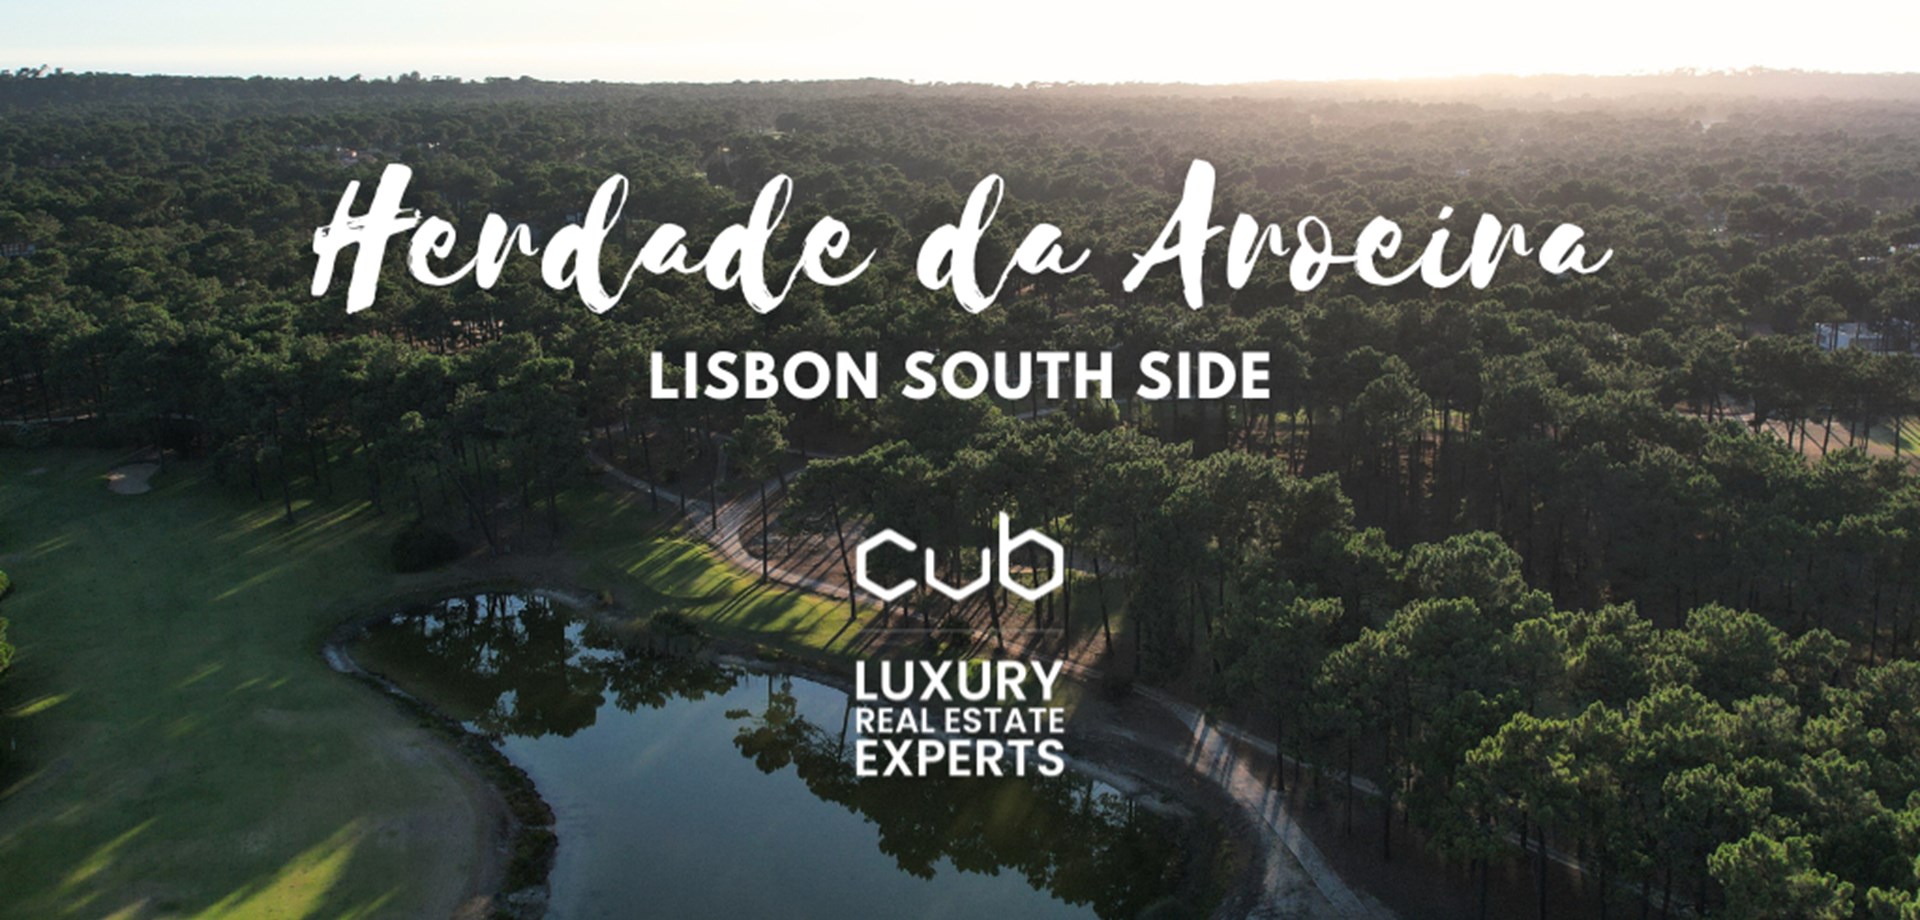 Entdecken Sie Herdade da Aroeira - ein Paradies in der Nähe von Lissabon